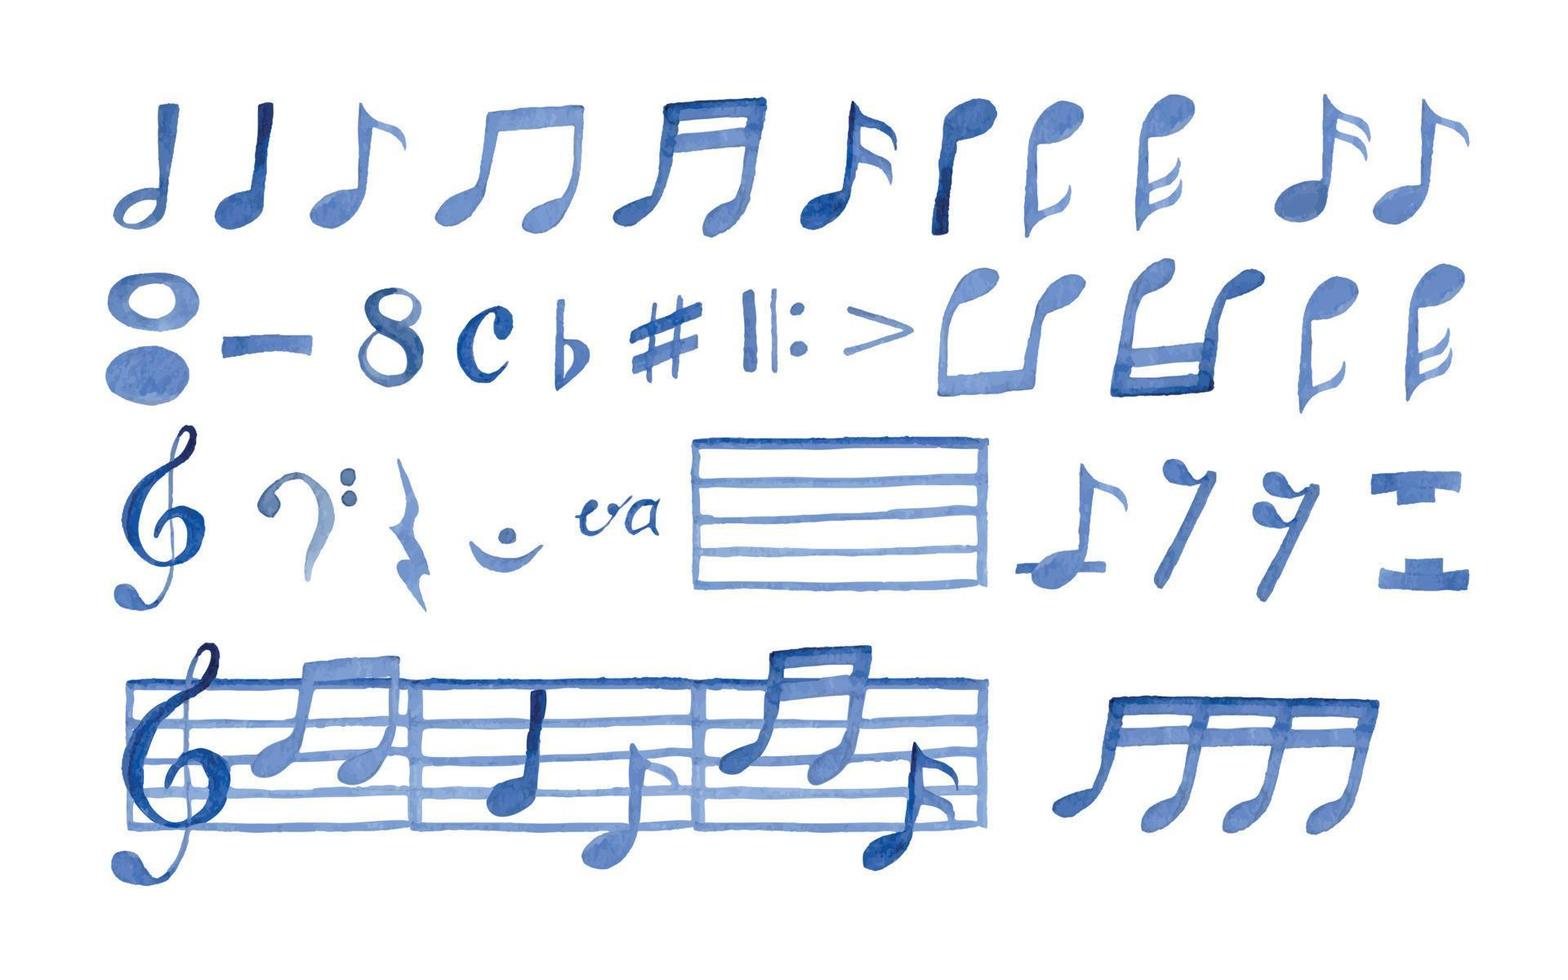 notes de musique aquarelle pour piano doodle peint à la main vecteur illustré grand ensemble couleur bleue sur fond blanc